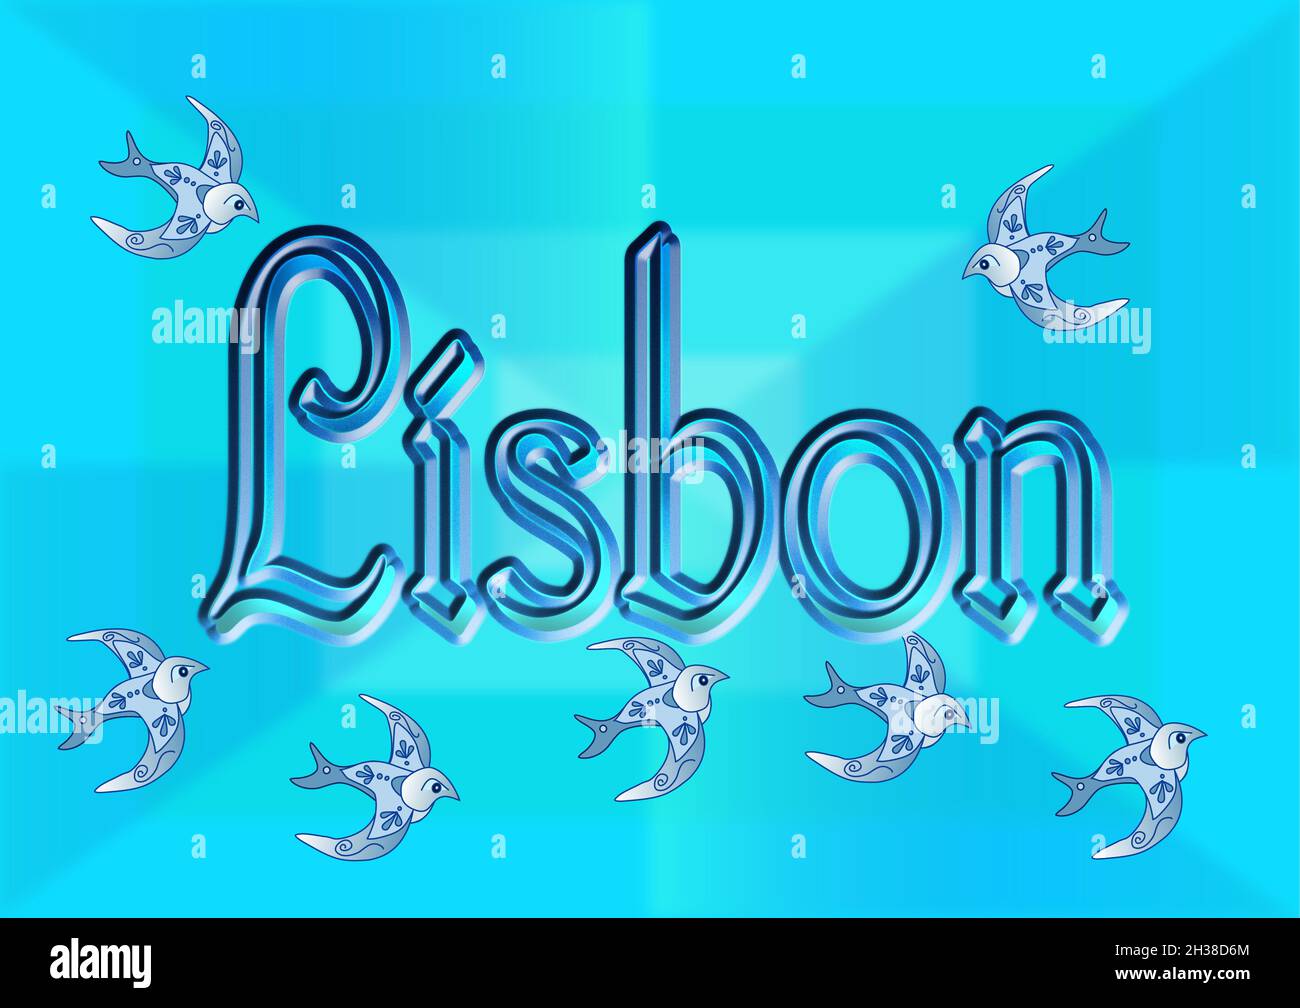 La parola Lisbona su sfondo blu con rondini che volano intorno Illustrazione Vettoriale